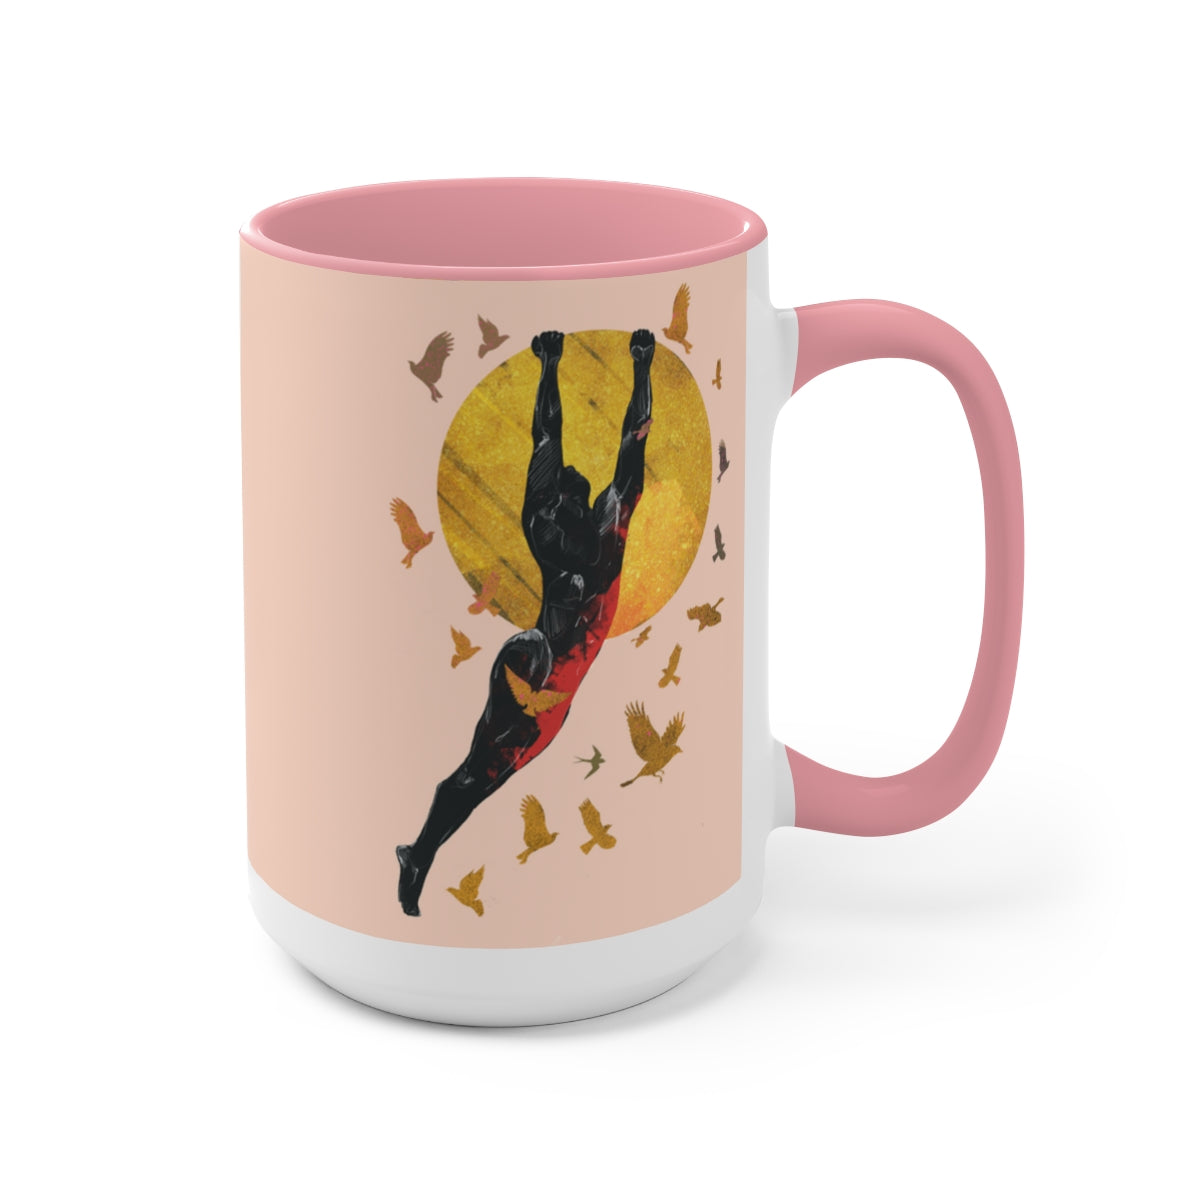 Birds Around the Sun - Light Pink  - Two-Tone Coffee Mugs, 15oz